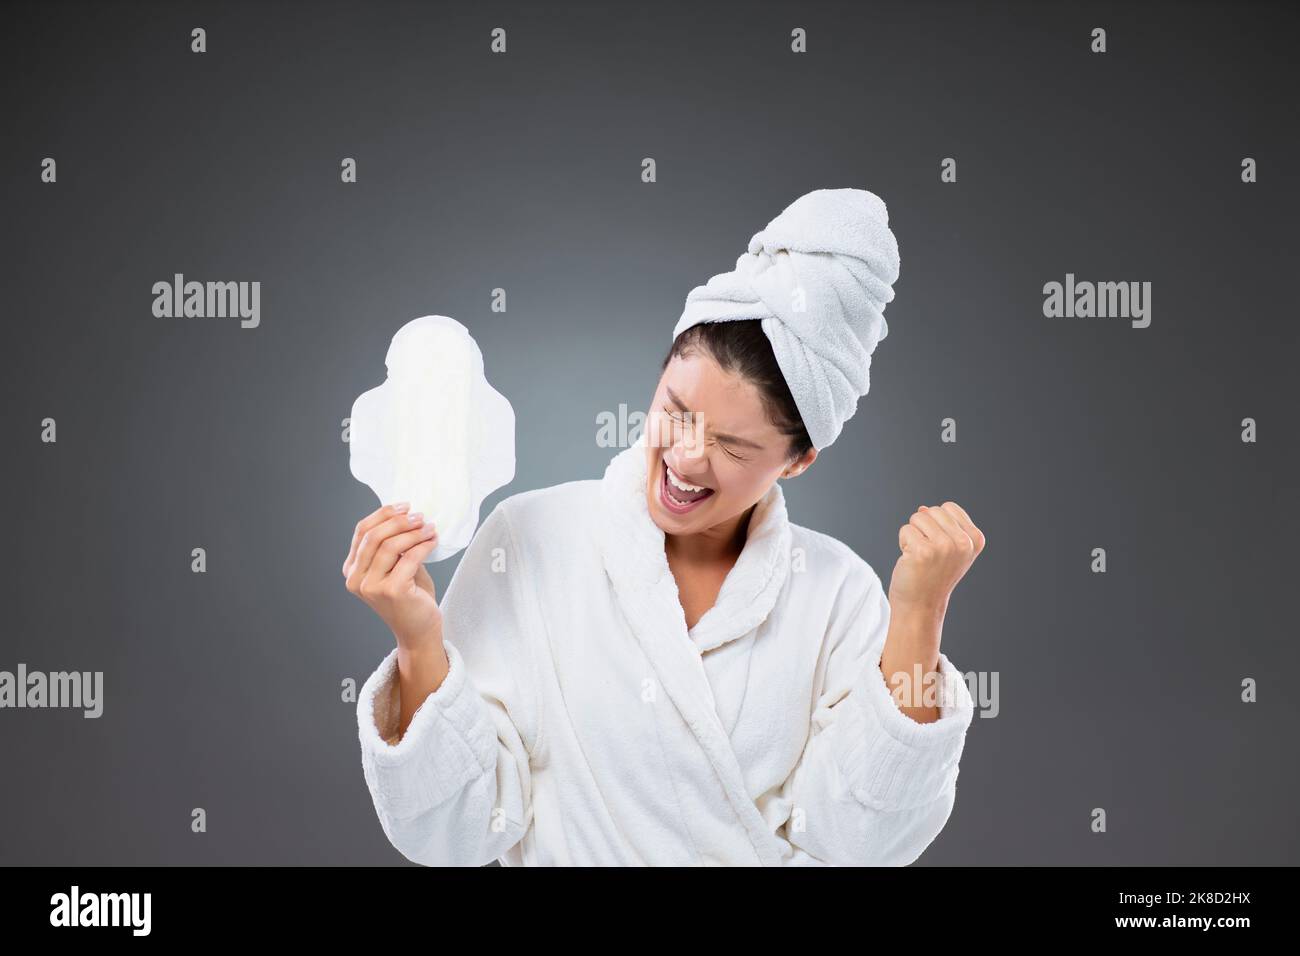 Protection pendant les règles. Une femme dans un peignoir et une serviette enveloppée autour de sa tête est heureuse d'avoir des articles prêts pour la menstruation. Elle tient une fée Banque D'Images